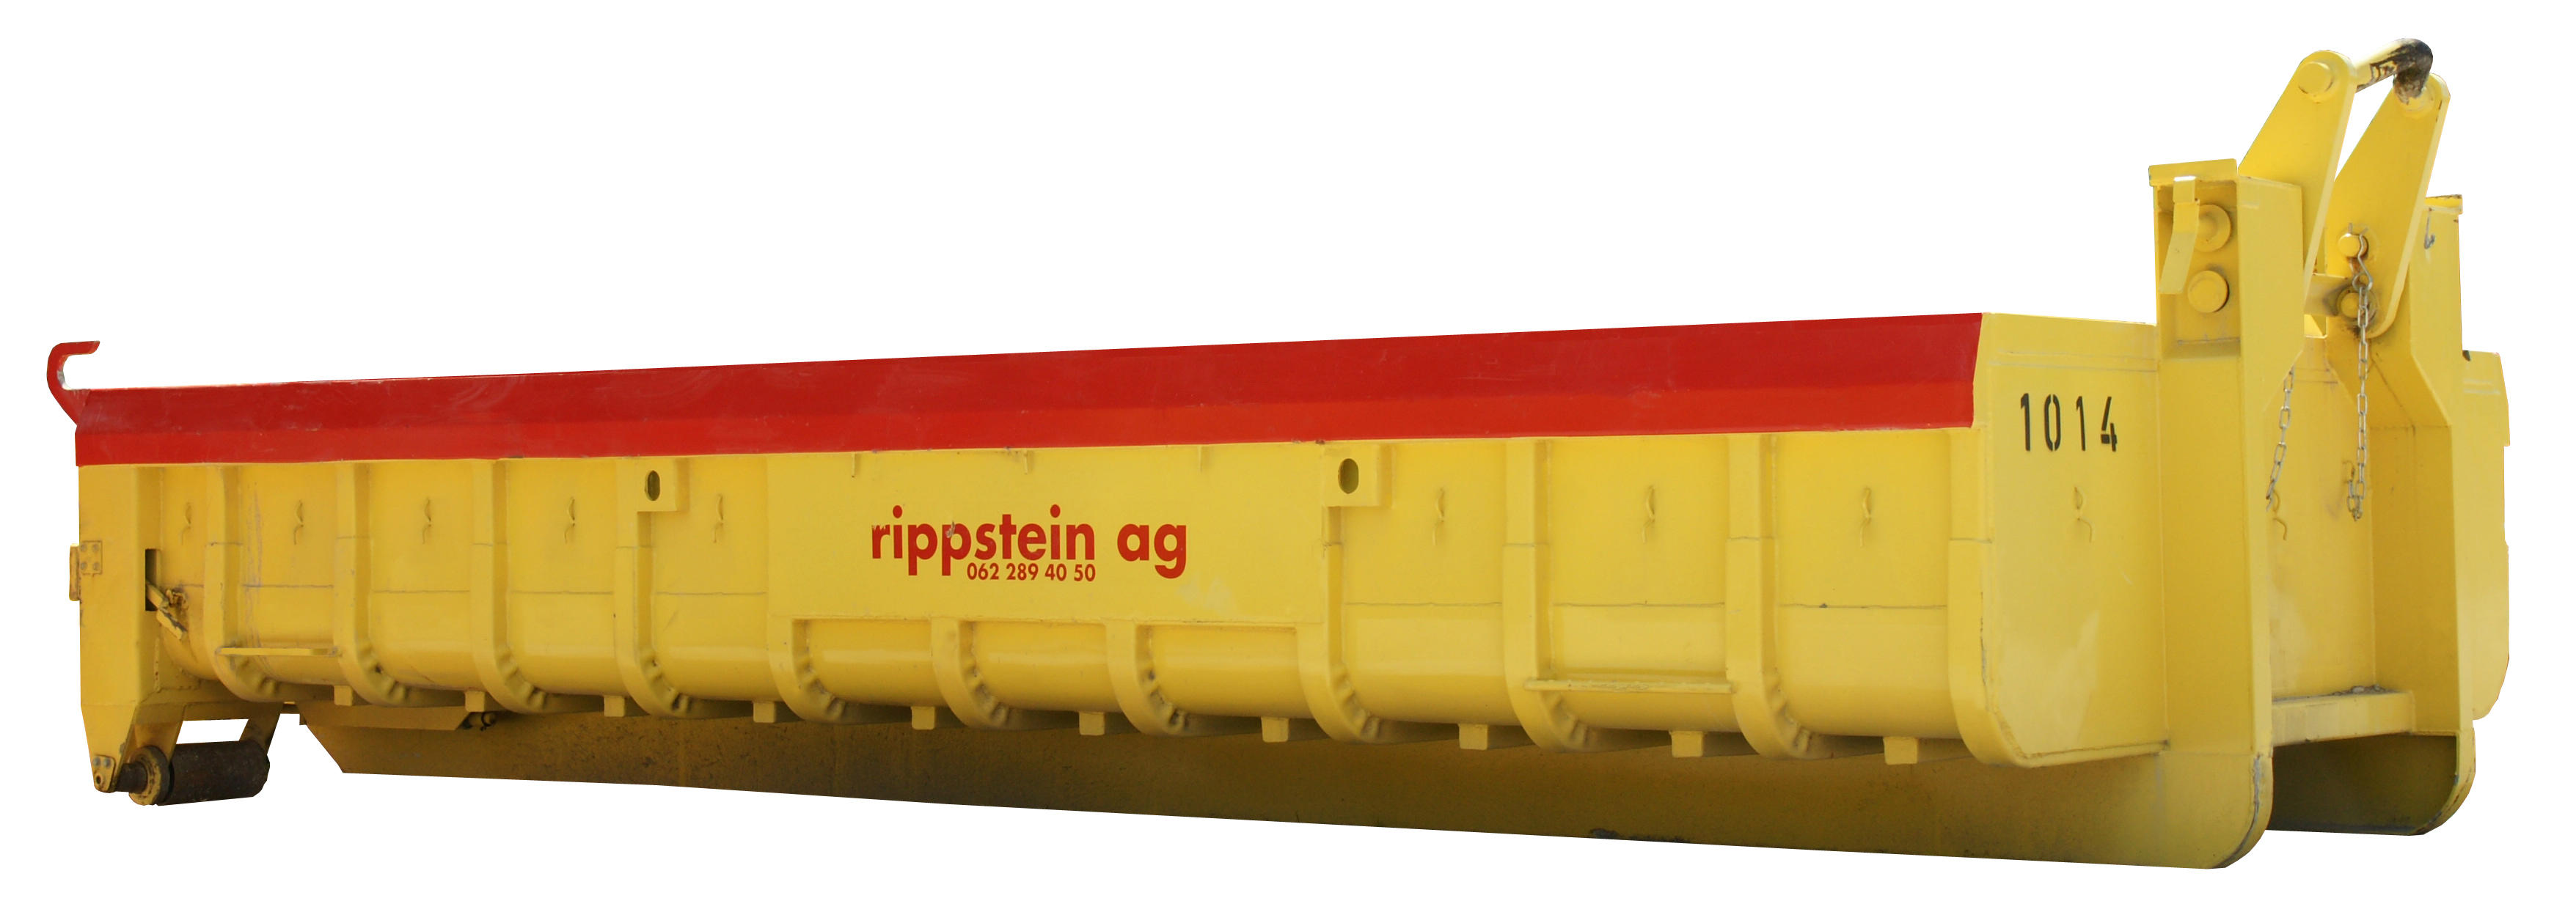 Bilder Rippstein Transport AG